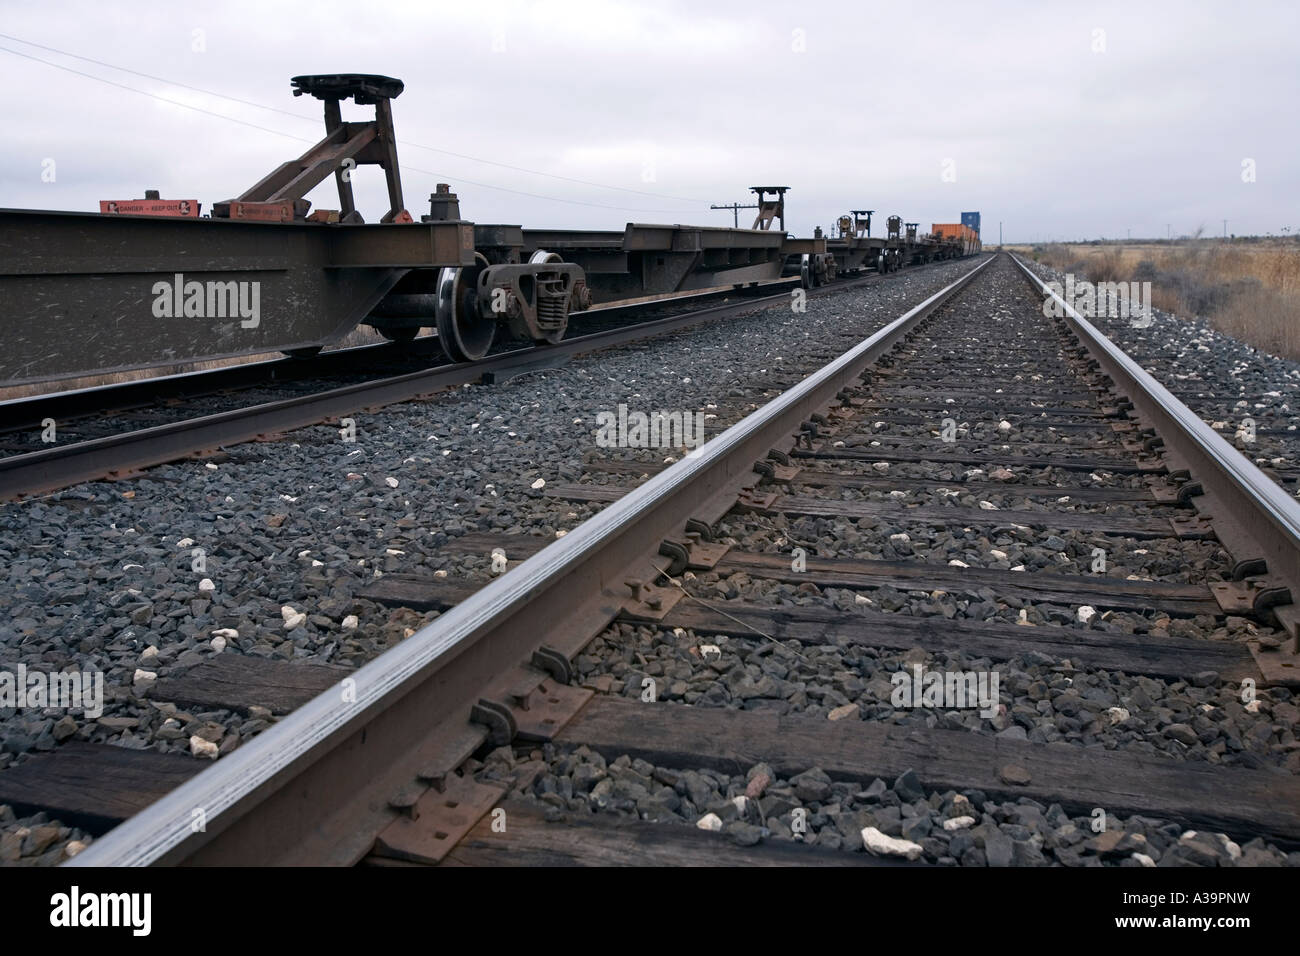 Union Pacific Railway entre Alpine et Marathon dans l'ouest du Texas Banque D'Images